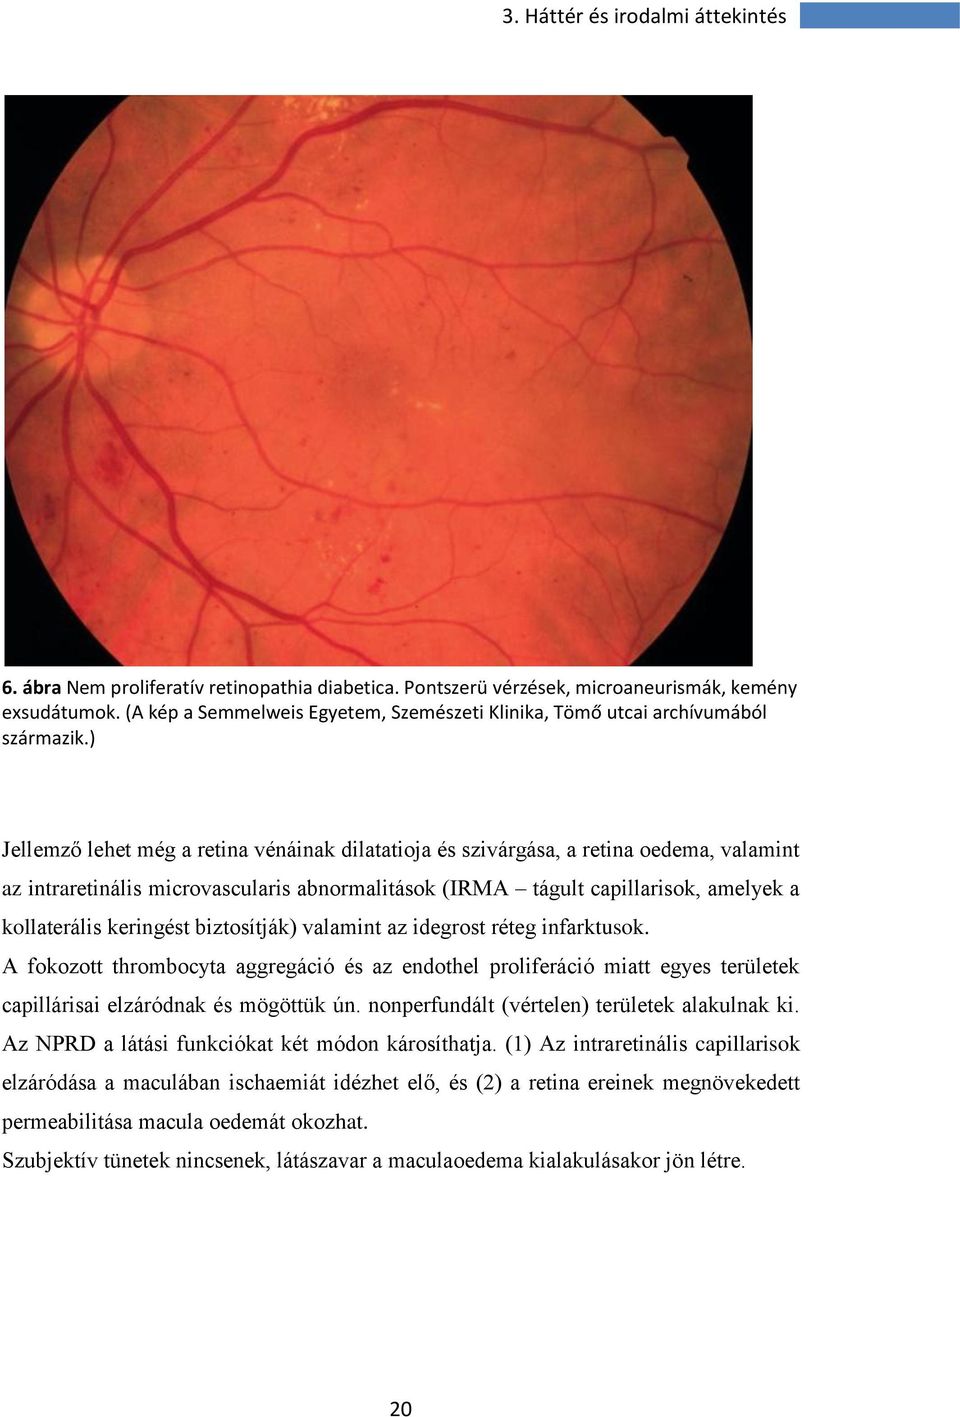 ) Jellemző lehet még a retina vénáinak dilatatioja és szivárgása, a retina oedema, valamint az intraretinális microvascularis abnormalitások (IRMA tágult capillarisok, amelyek a kollaterális